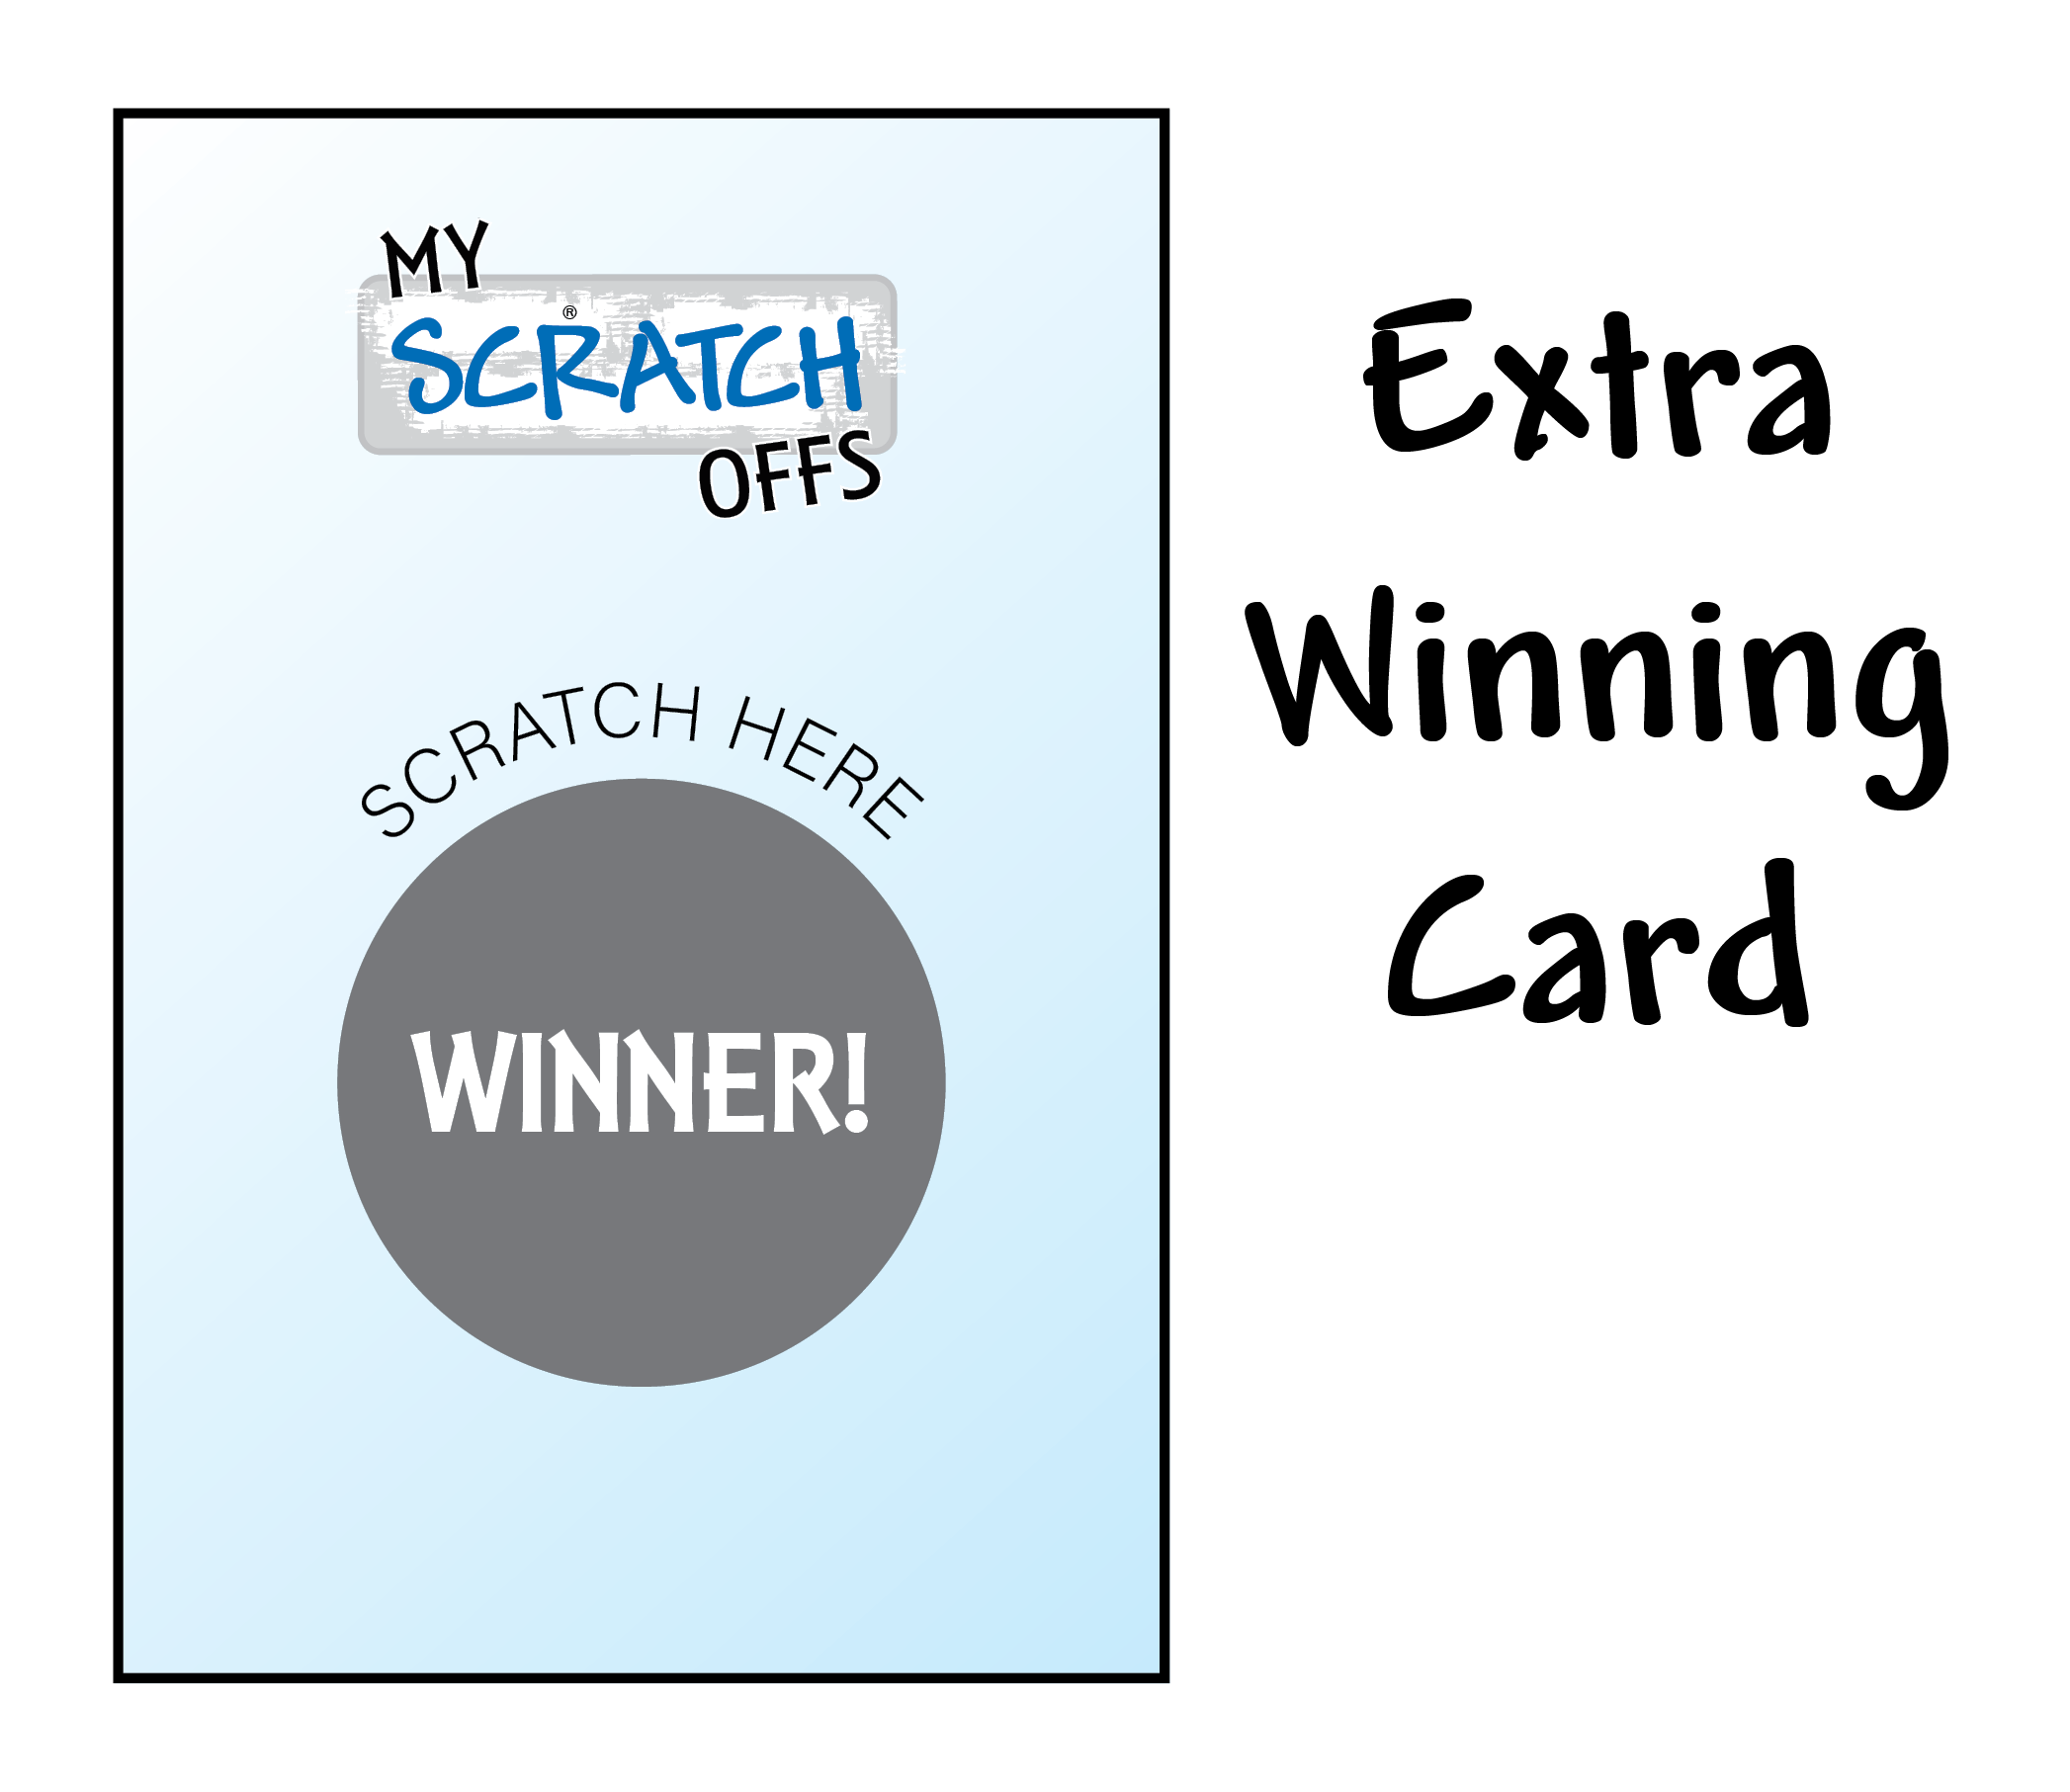 Extra Winning Card - Christmas - My Scratch Offs